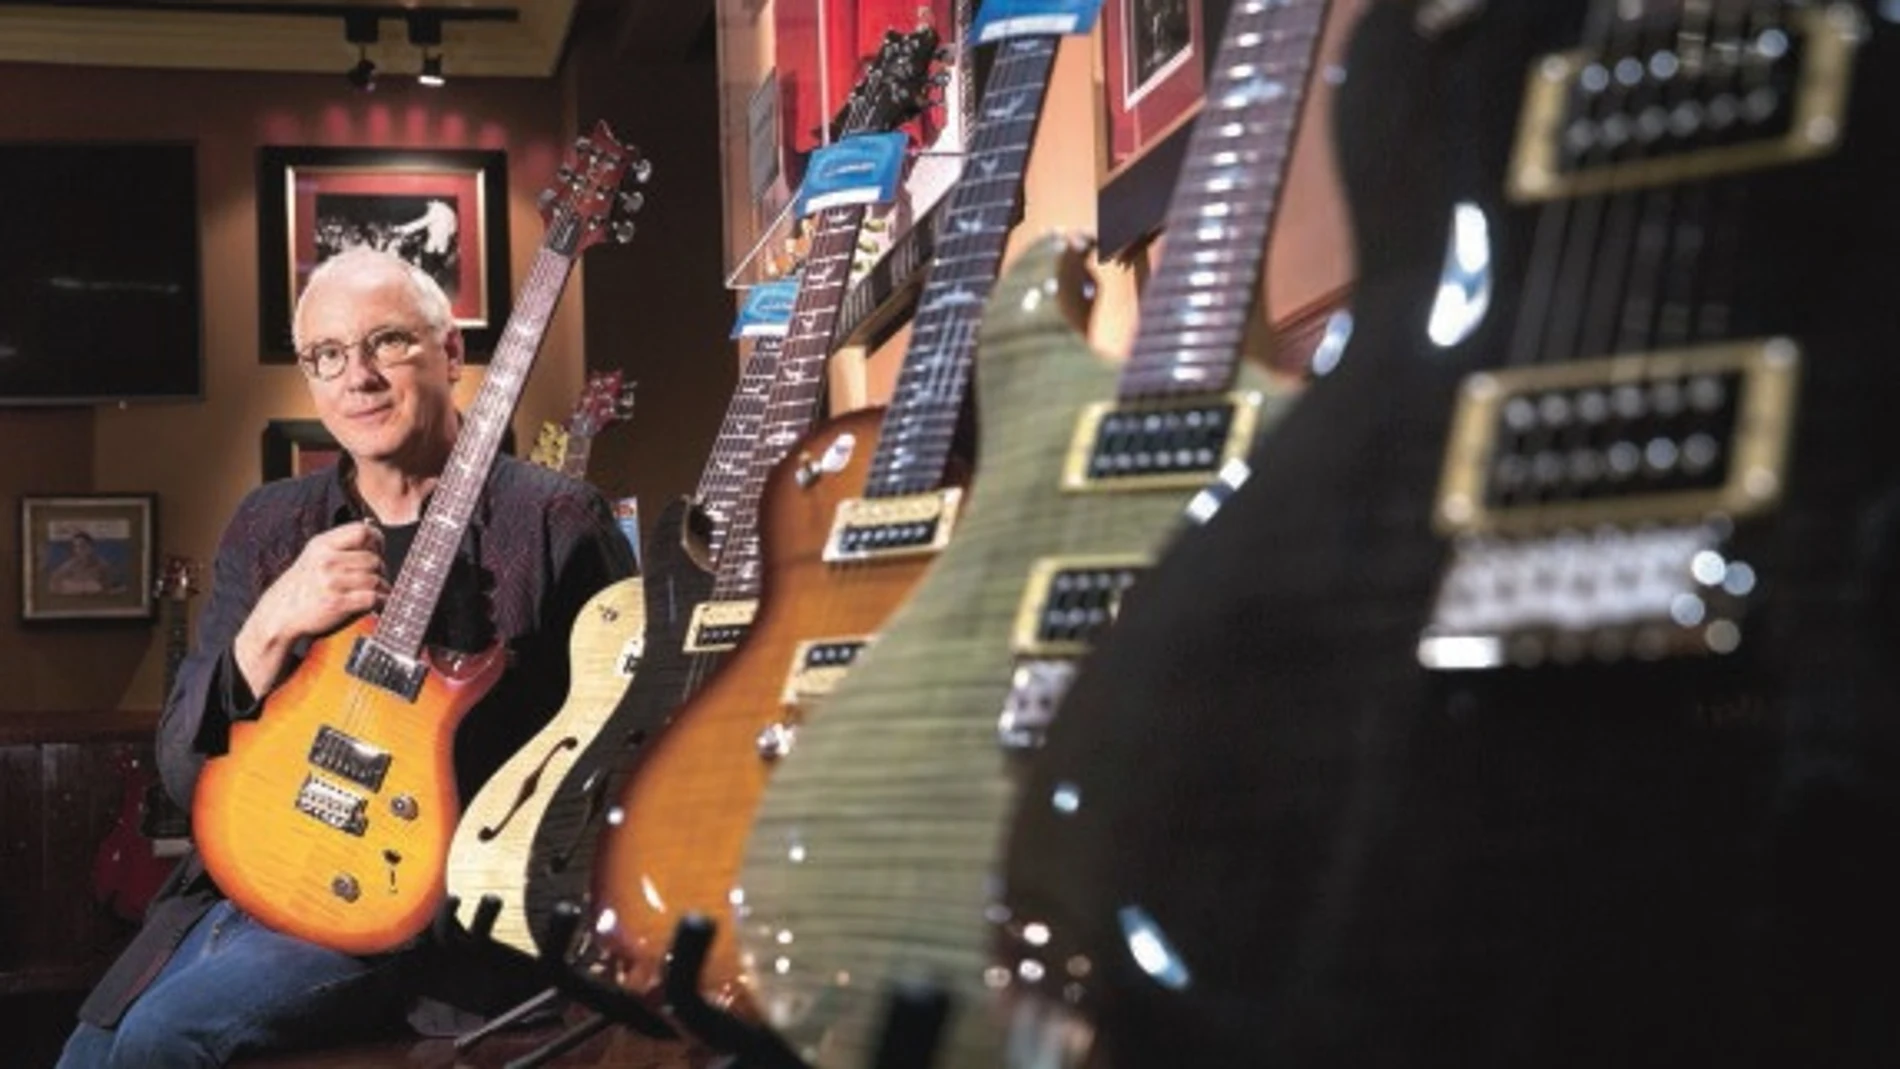 El lutier norteamericano Paul Reed Smith junto a sus guitarras en el Hard Rock Café de Madrid